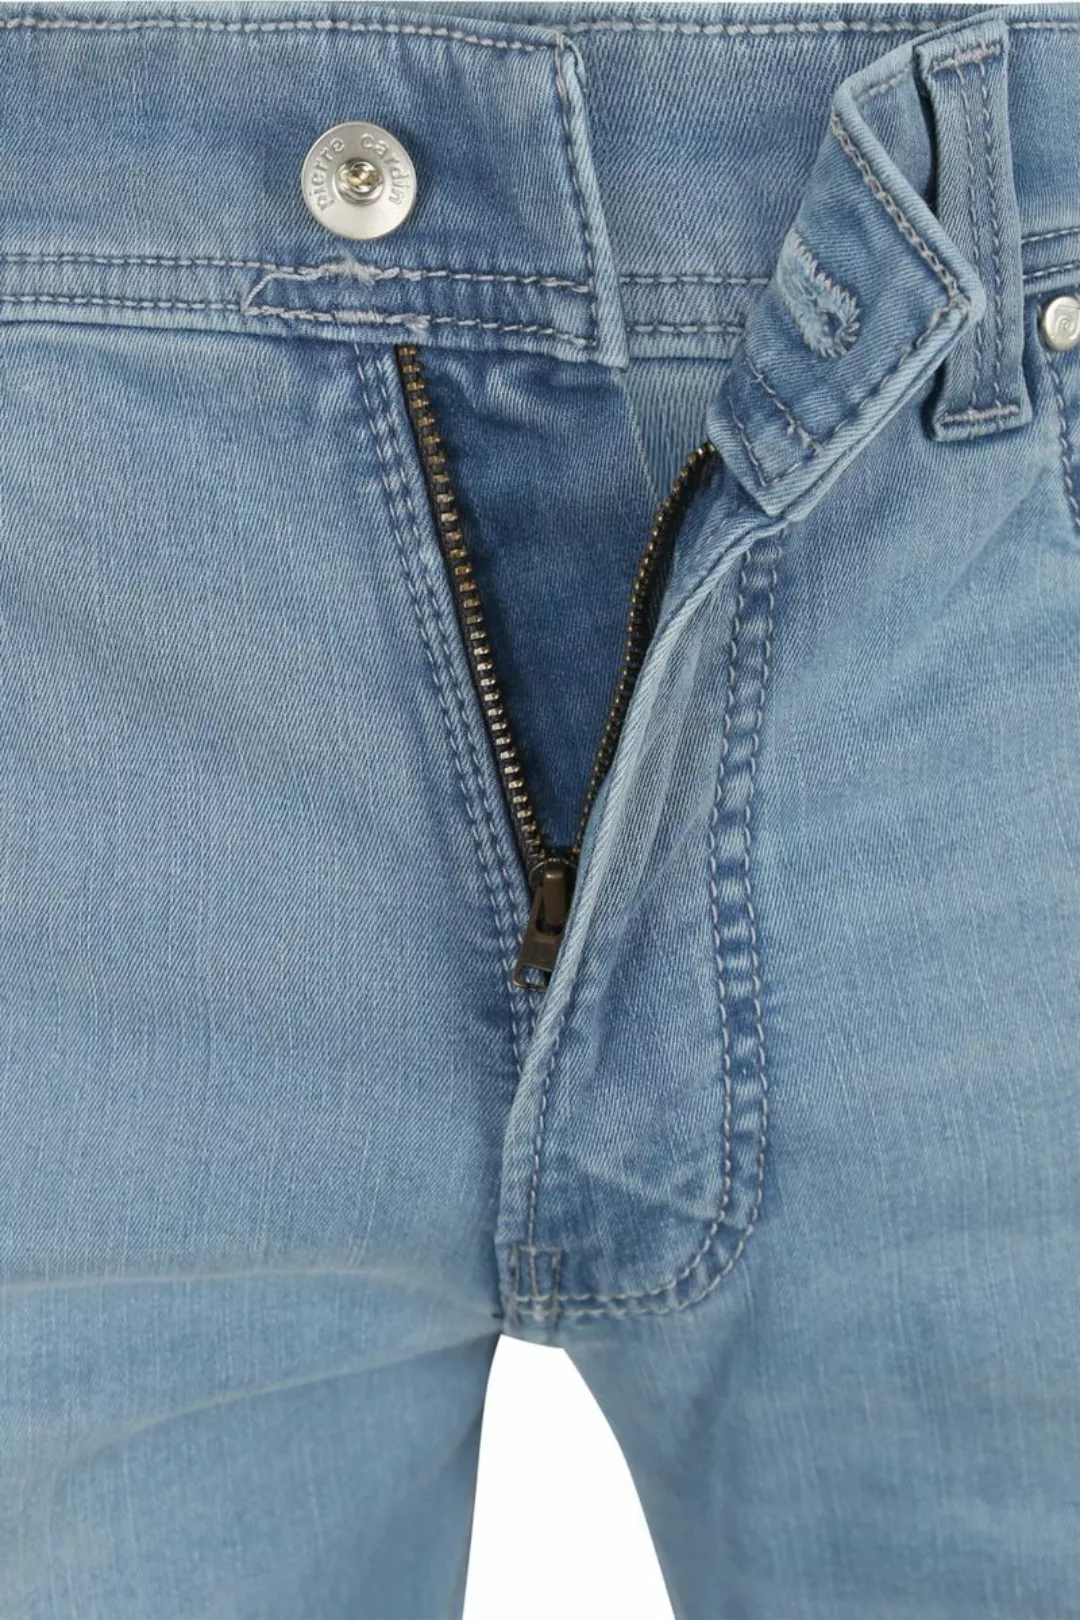 Pierre Cardin Jeans Lyon Tapered Future Flex Hellblau  - Größe W 32 - L 34 günstig online kaufen